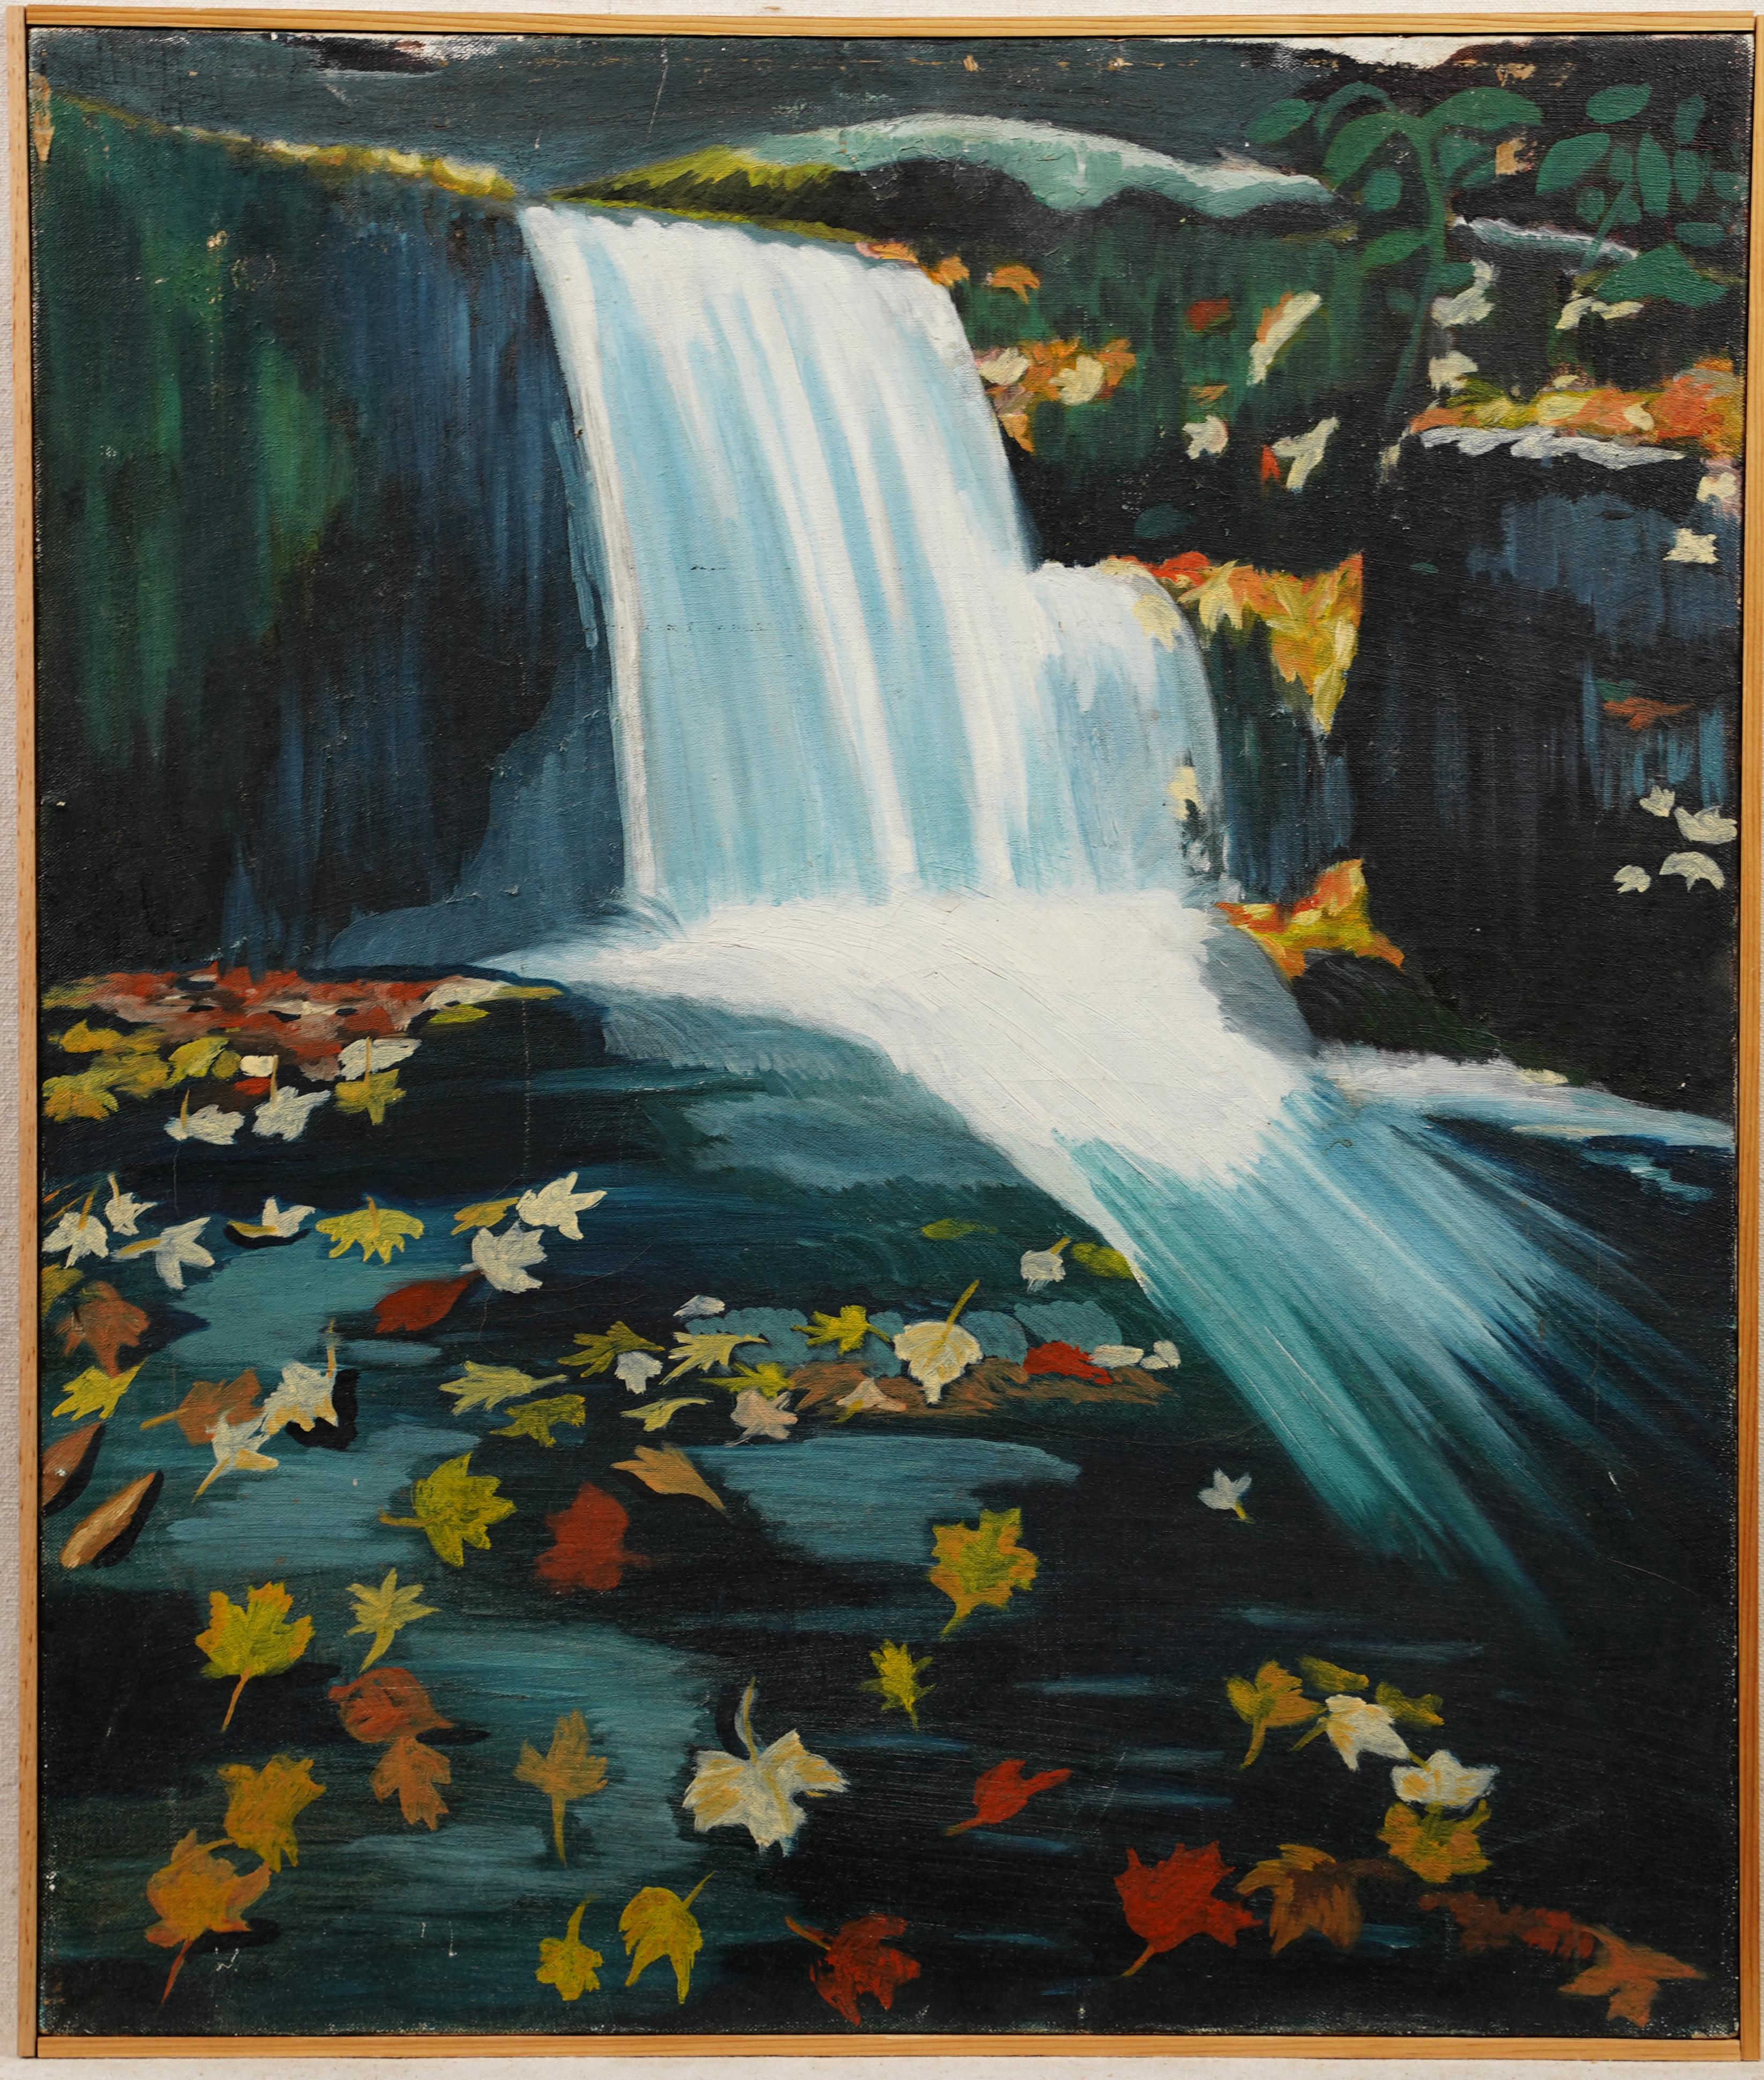 Unknown Landscape Painting – Gerahmte Modernistische romantische Blätter Herbst-Wasserfall-Landschaftsgemälde, gerahmt, Vintage